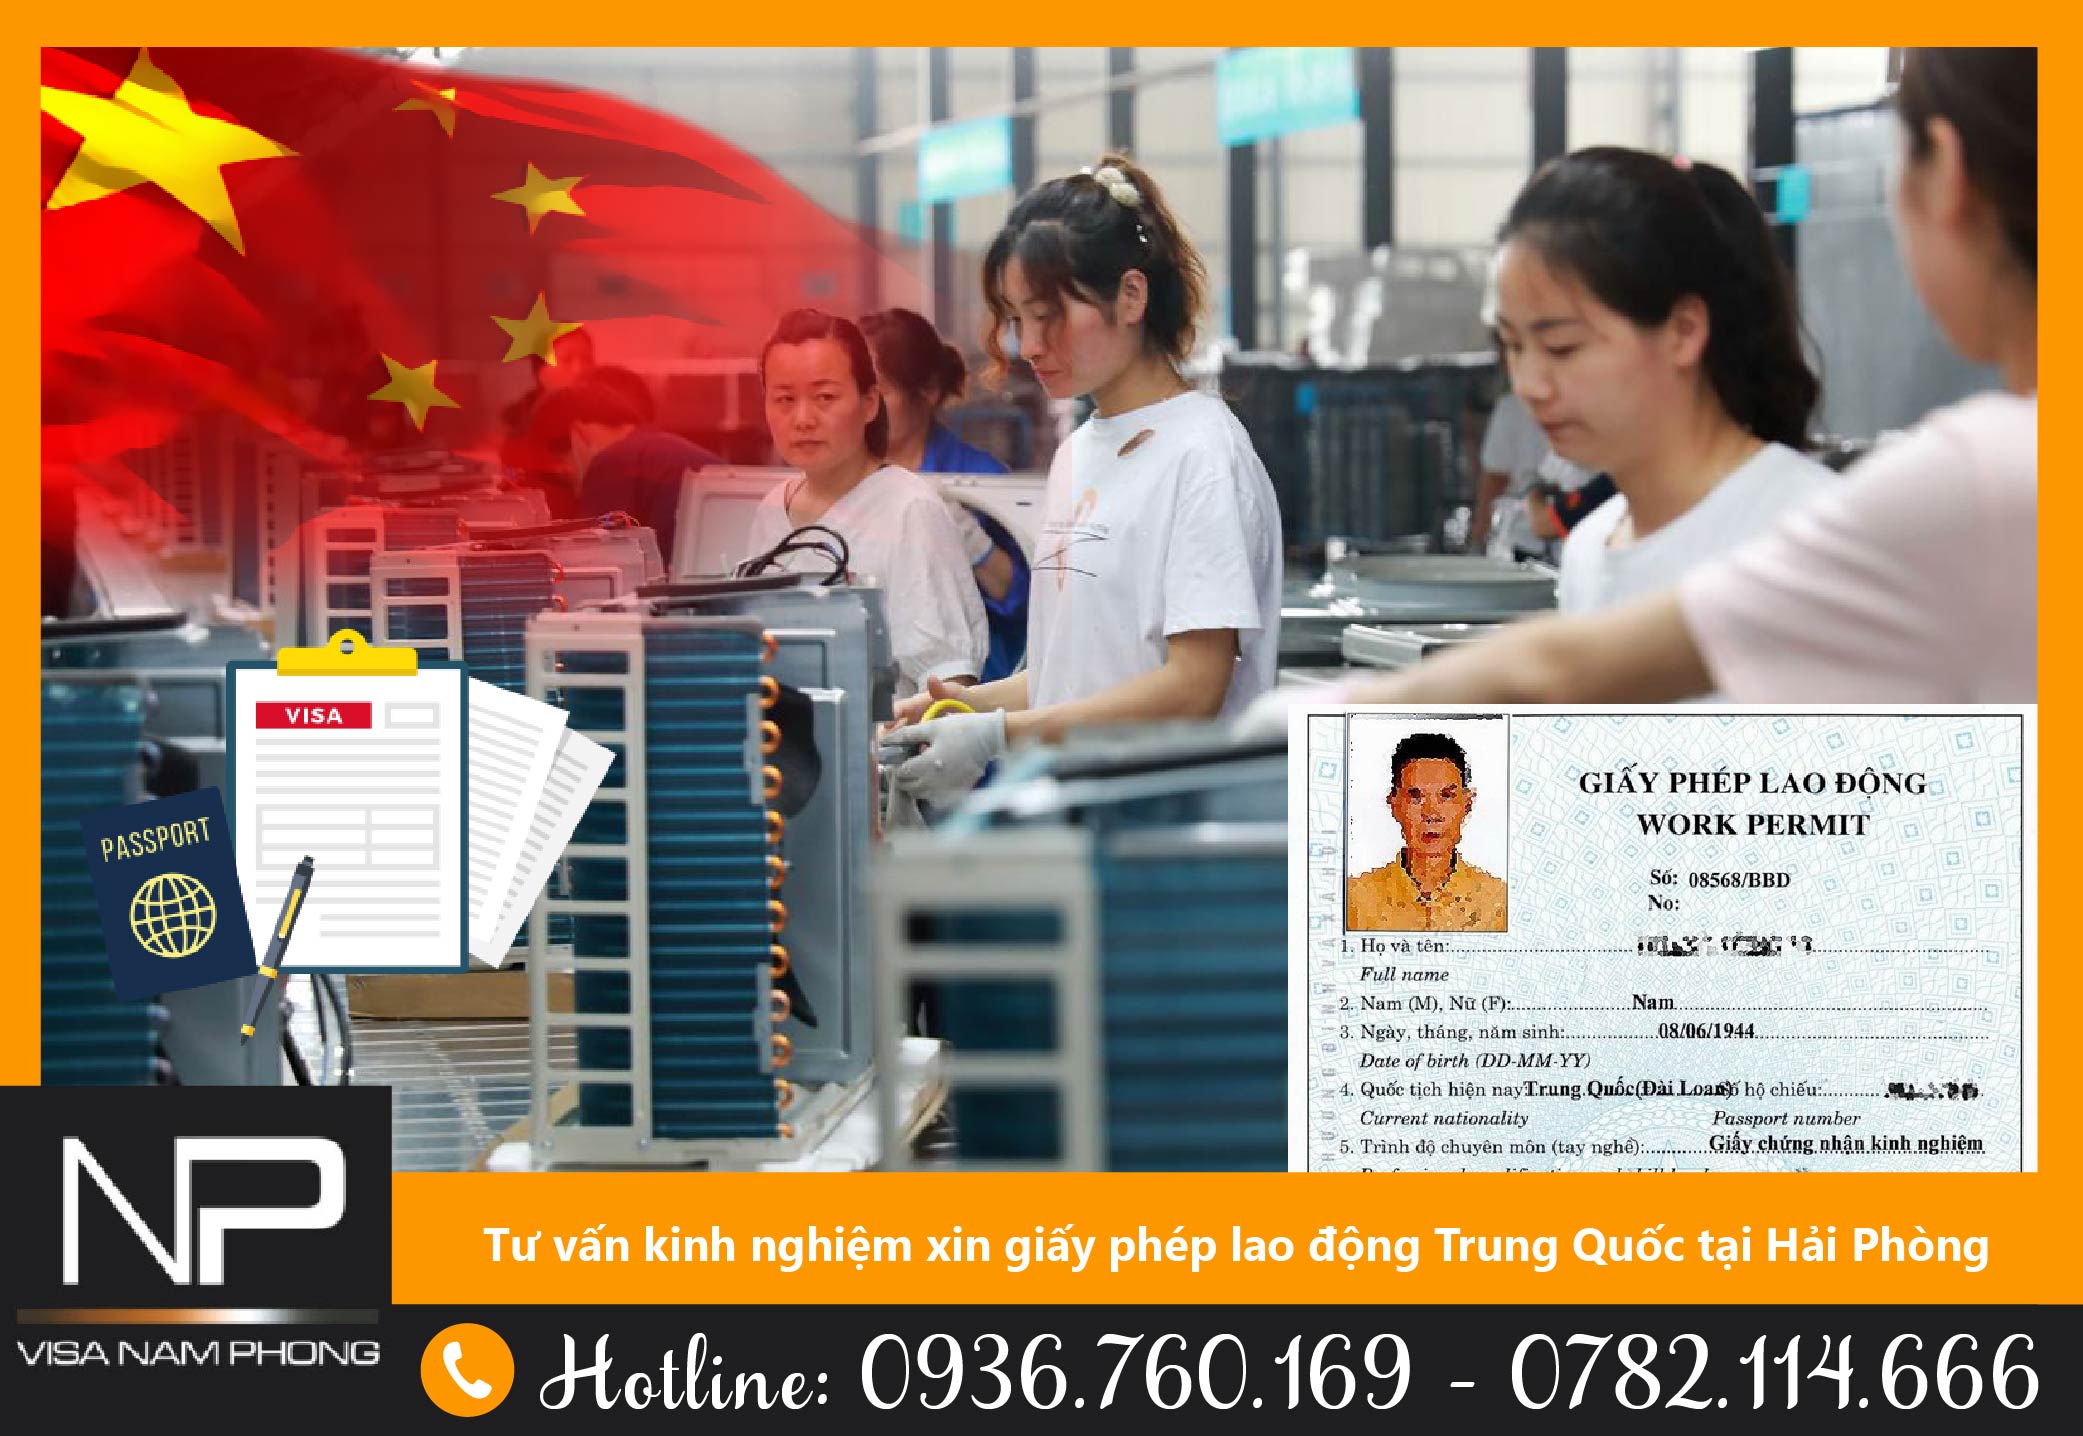 Tư vấn kinh nghiệm xin giấy phép lao động Trung Quốc tại Hải Phòng